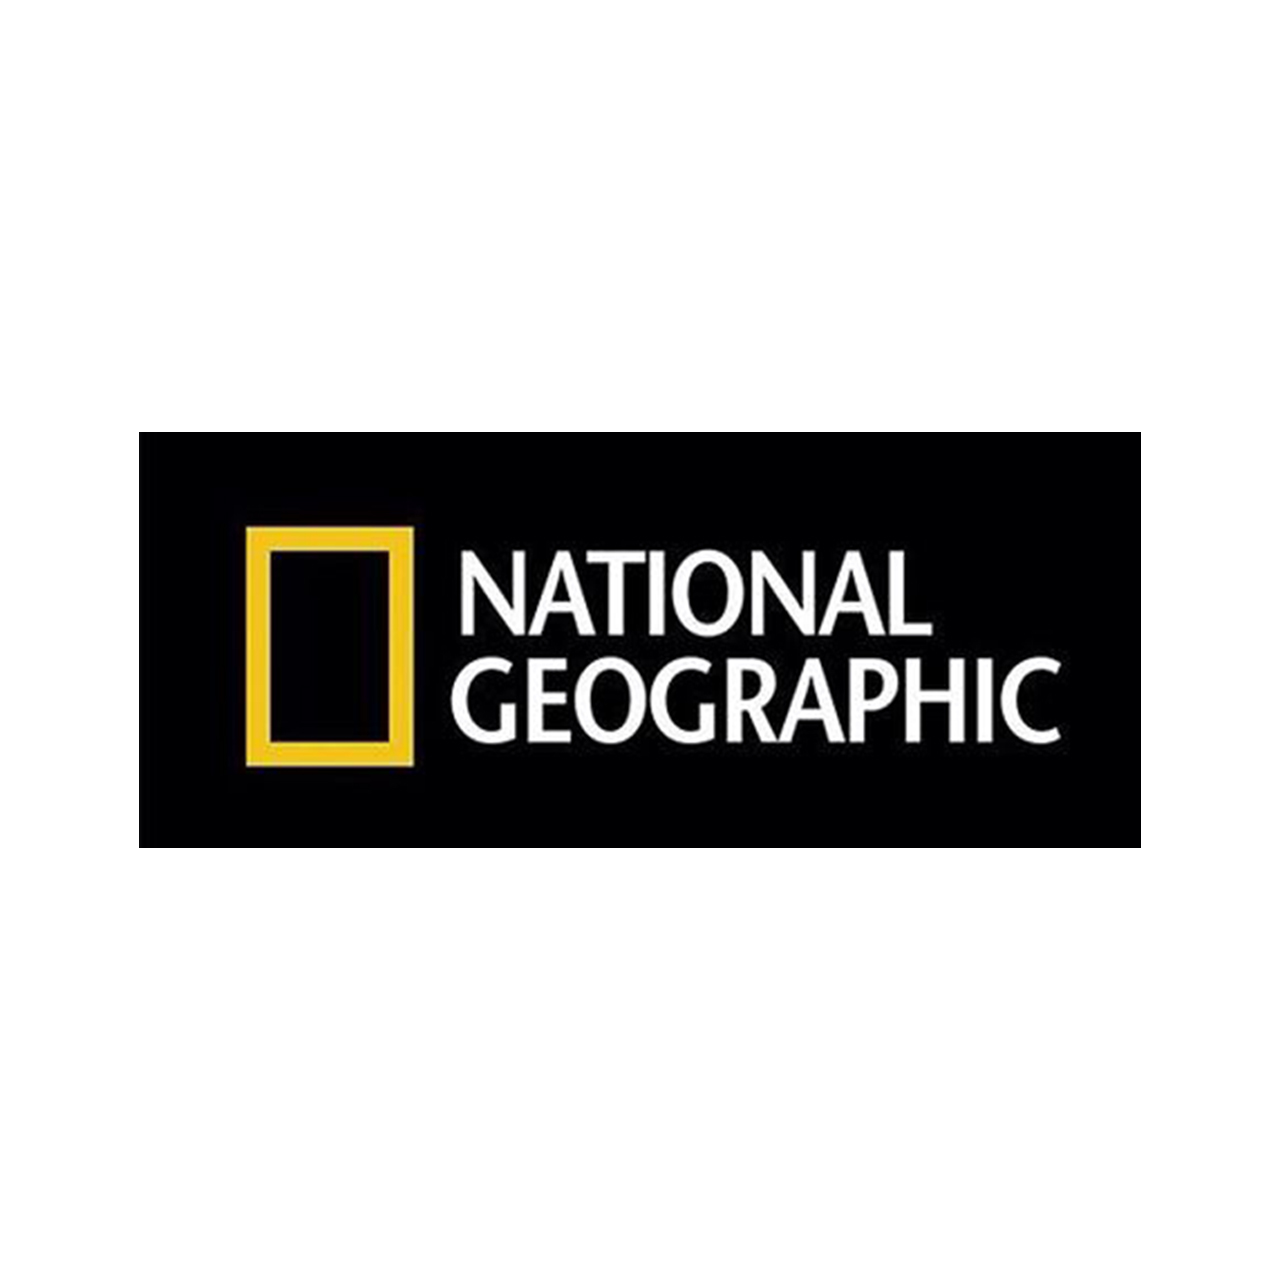 نقد و بررسی استیکر تزیینی موبایل طرح National Geographic کد 311 توسط خریداران